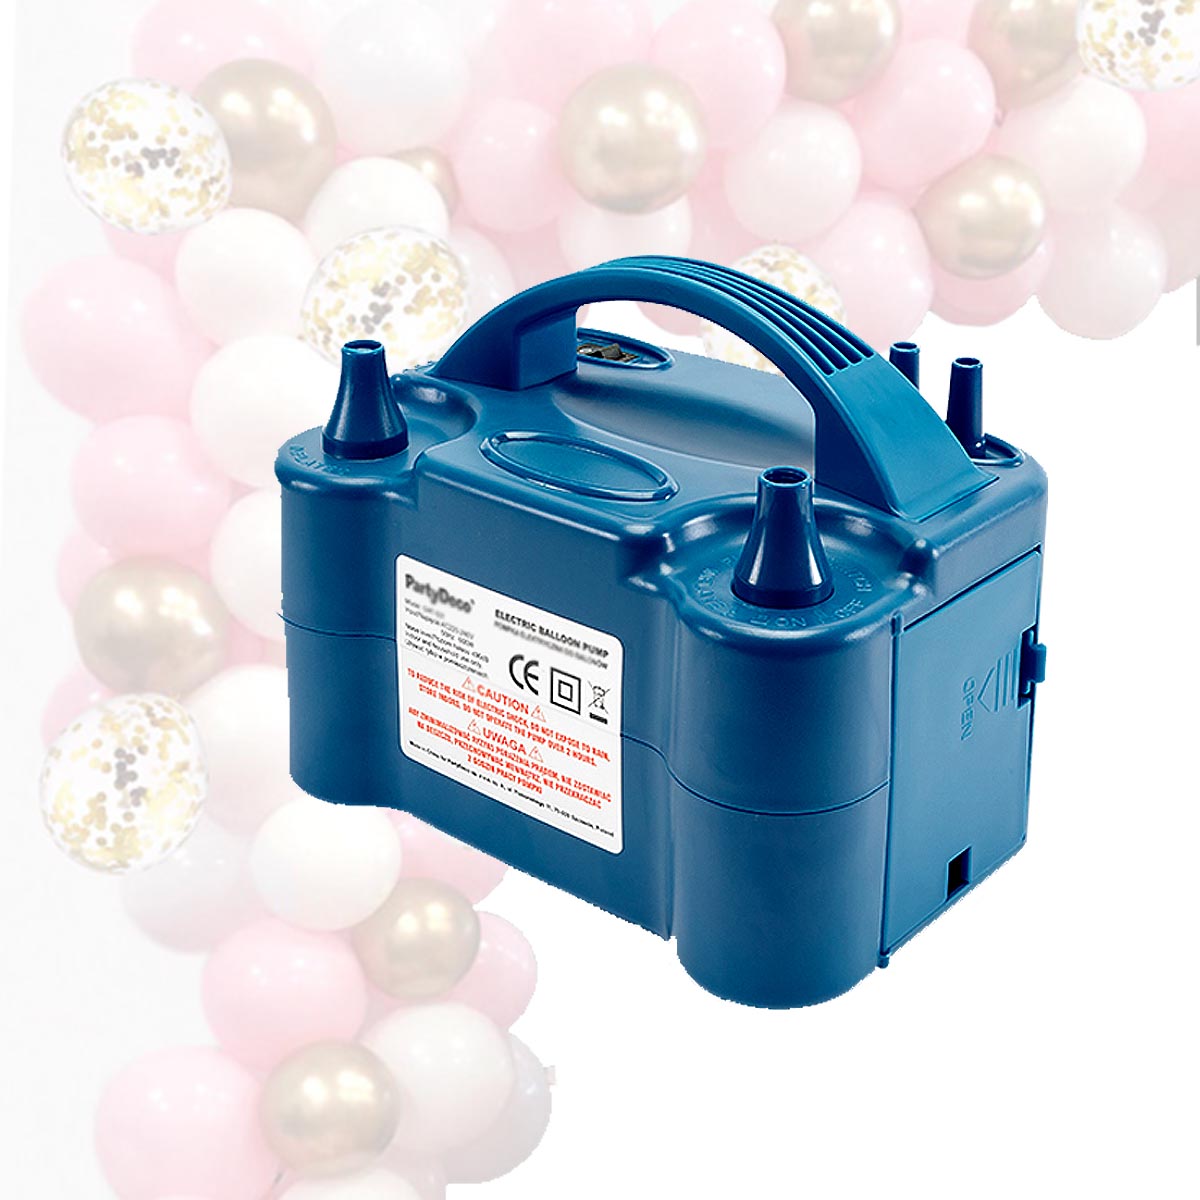 https://fundoro.de/cdn/shop/products/101-GHT-501-Elektrische-Luftballonpumpe-2-Duesen.jpg?v=1647332953